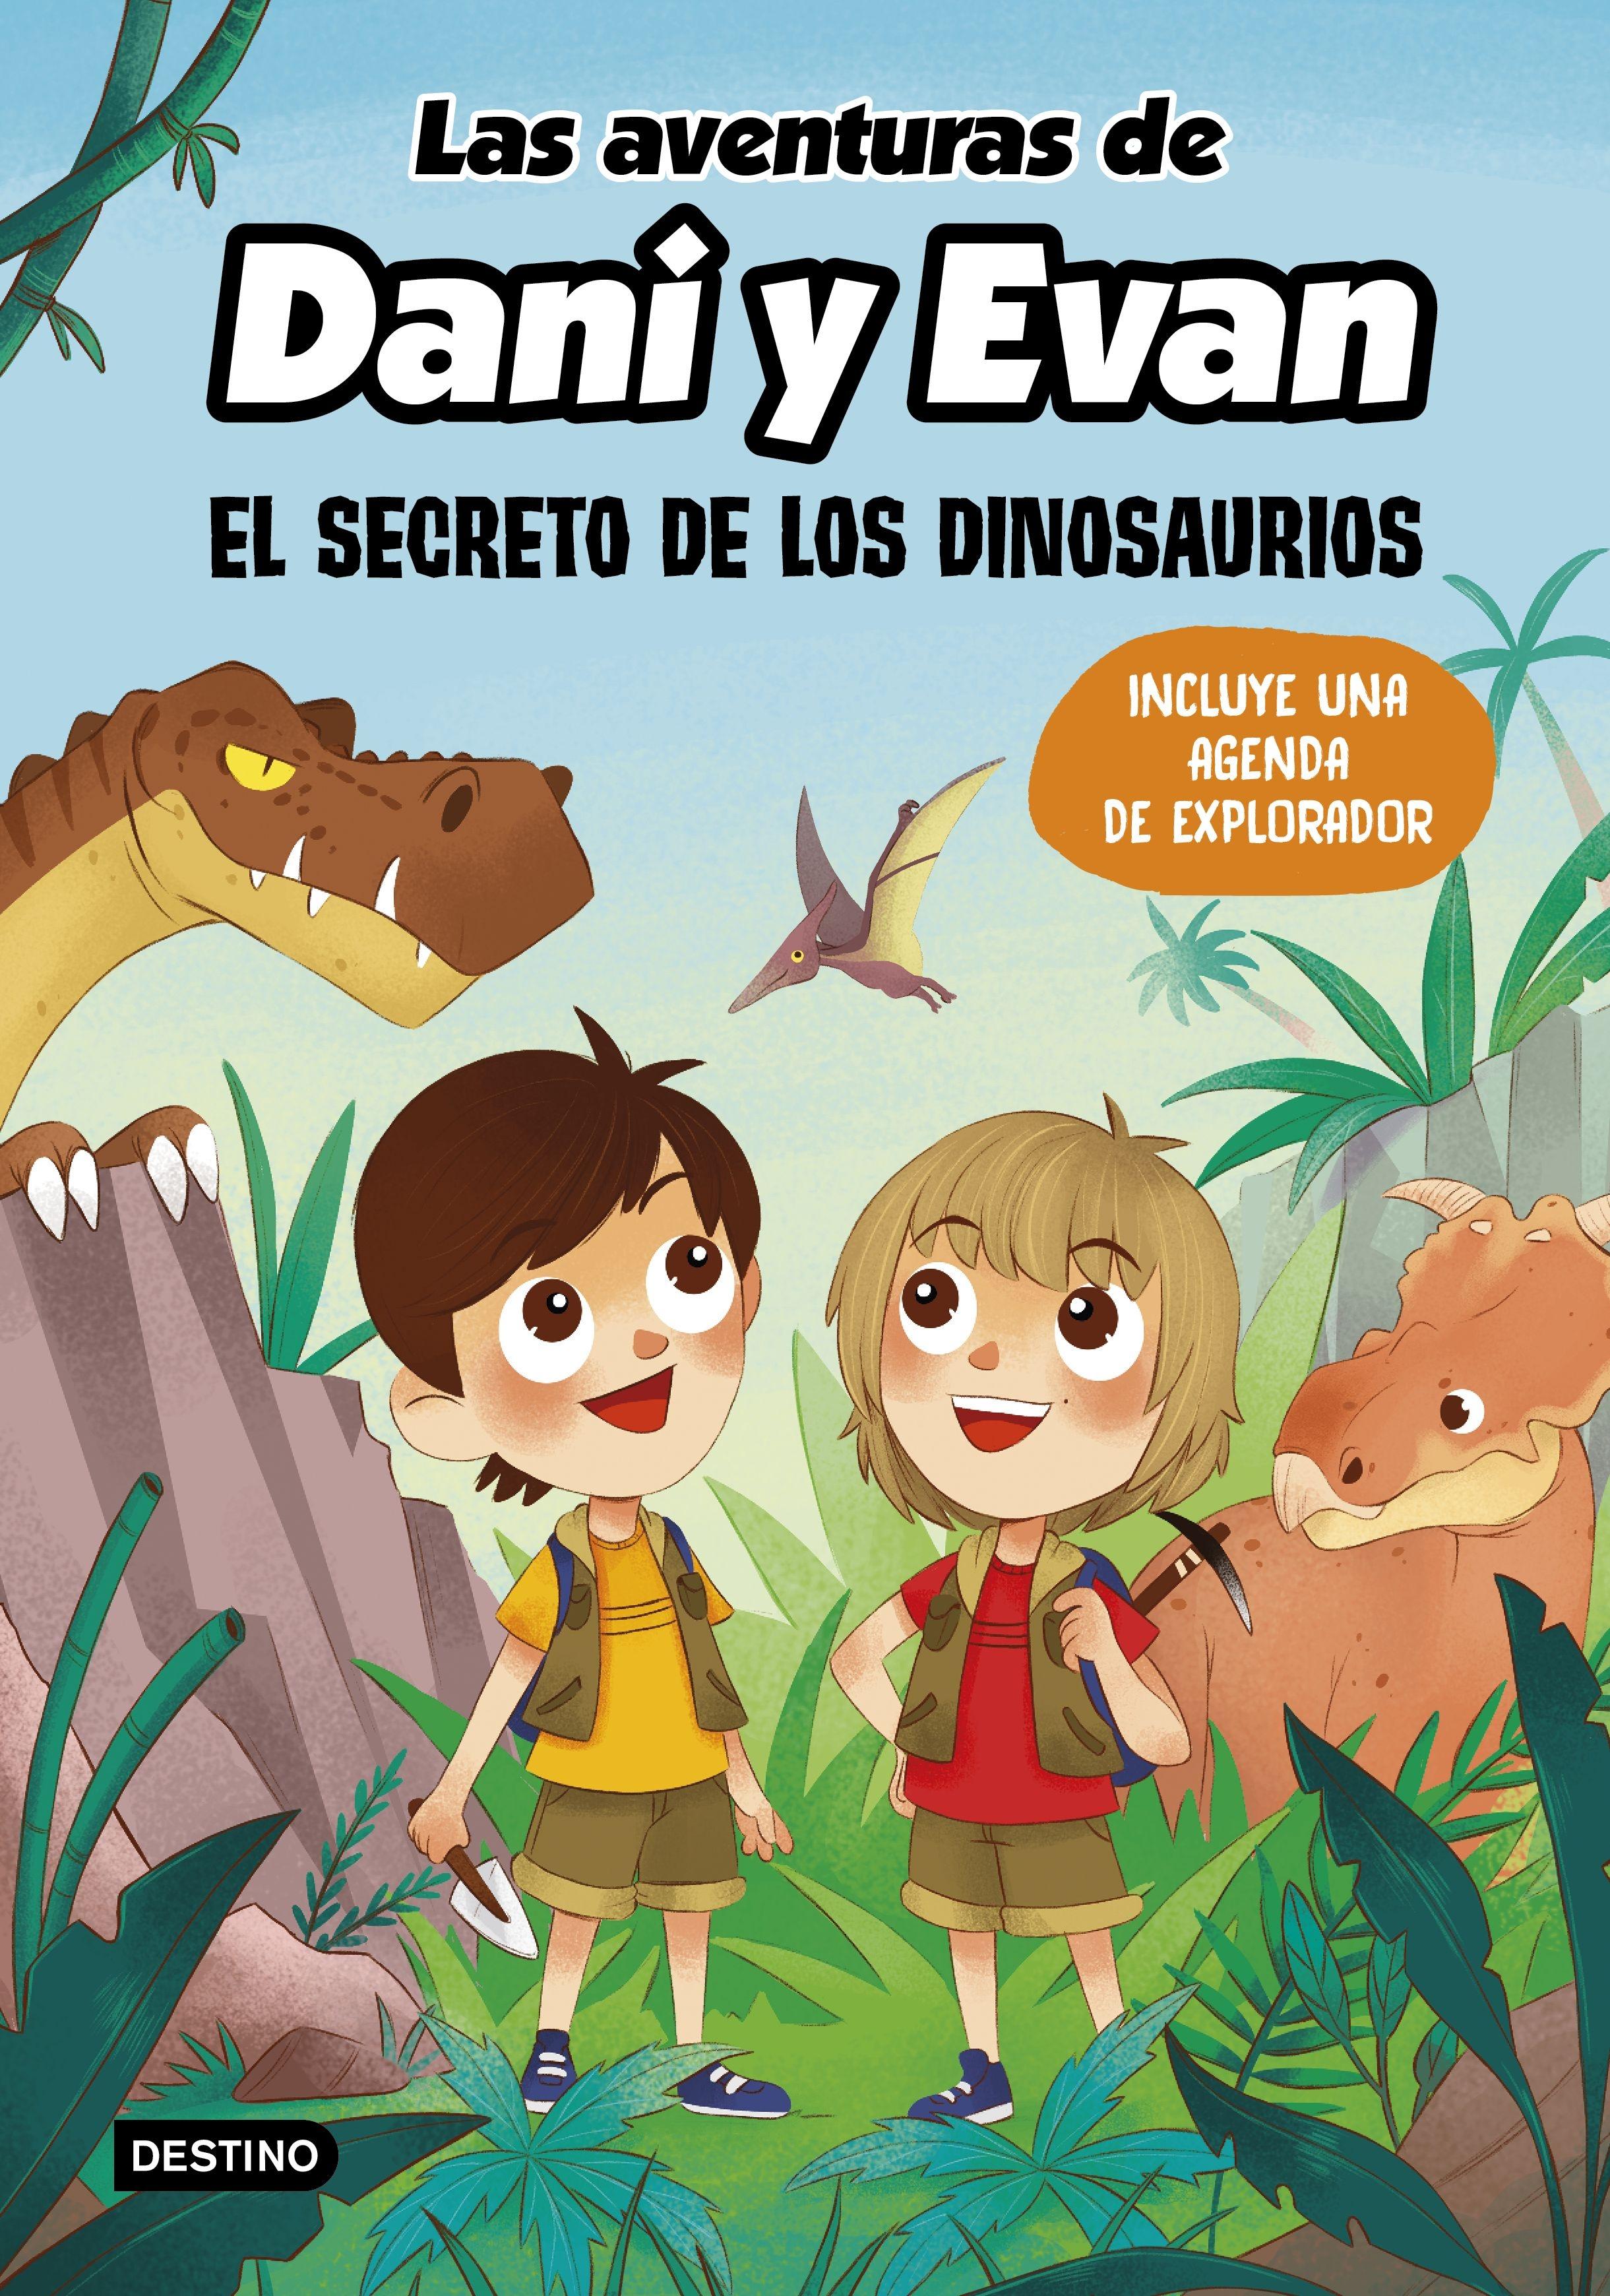 Las aventuras de Dani y Evan. El secreto de los dinosaurios "Incluye una agenda de explorador". 